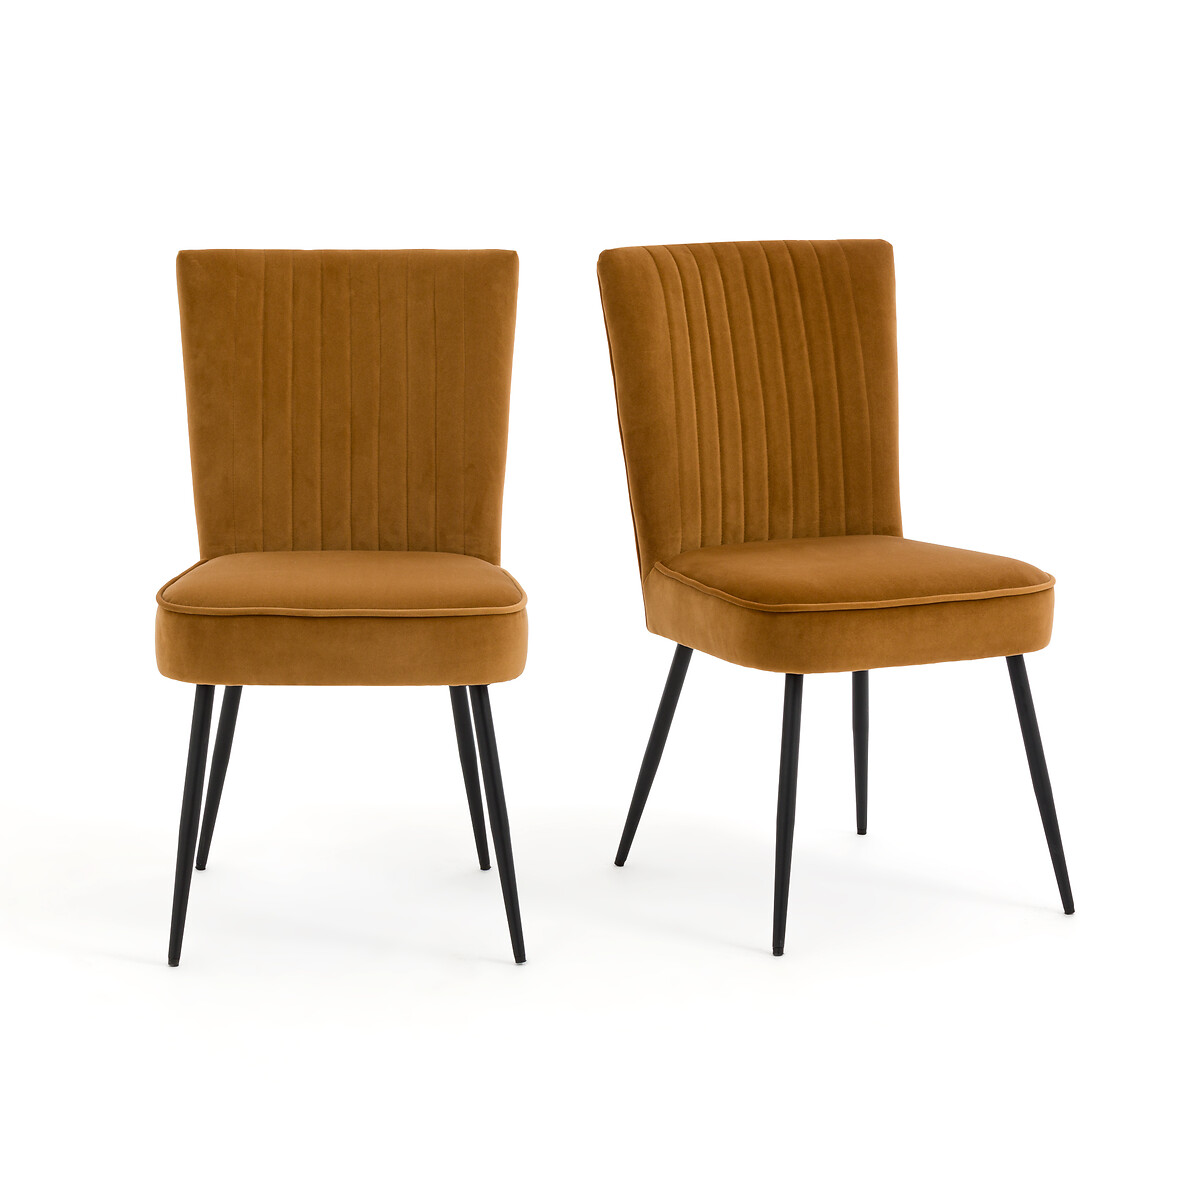 Комплект из 2-х винтажных стульев в стиле 50-х Ronda единый размер желтый